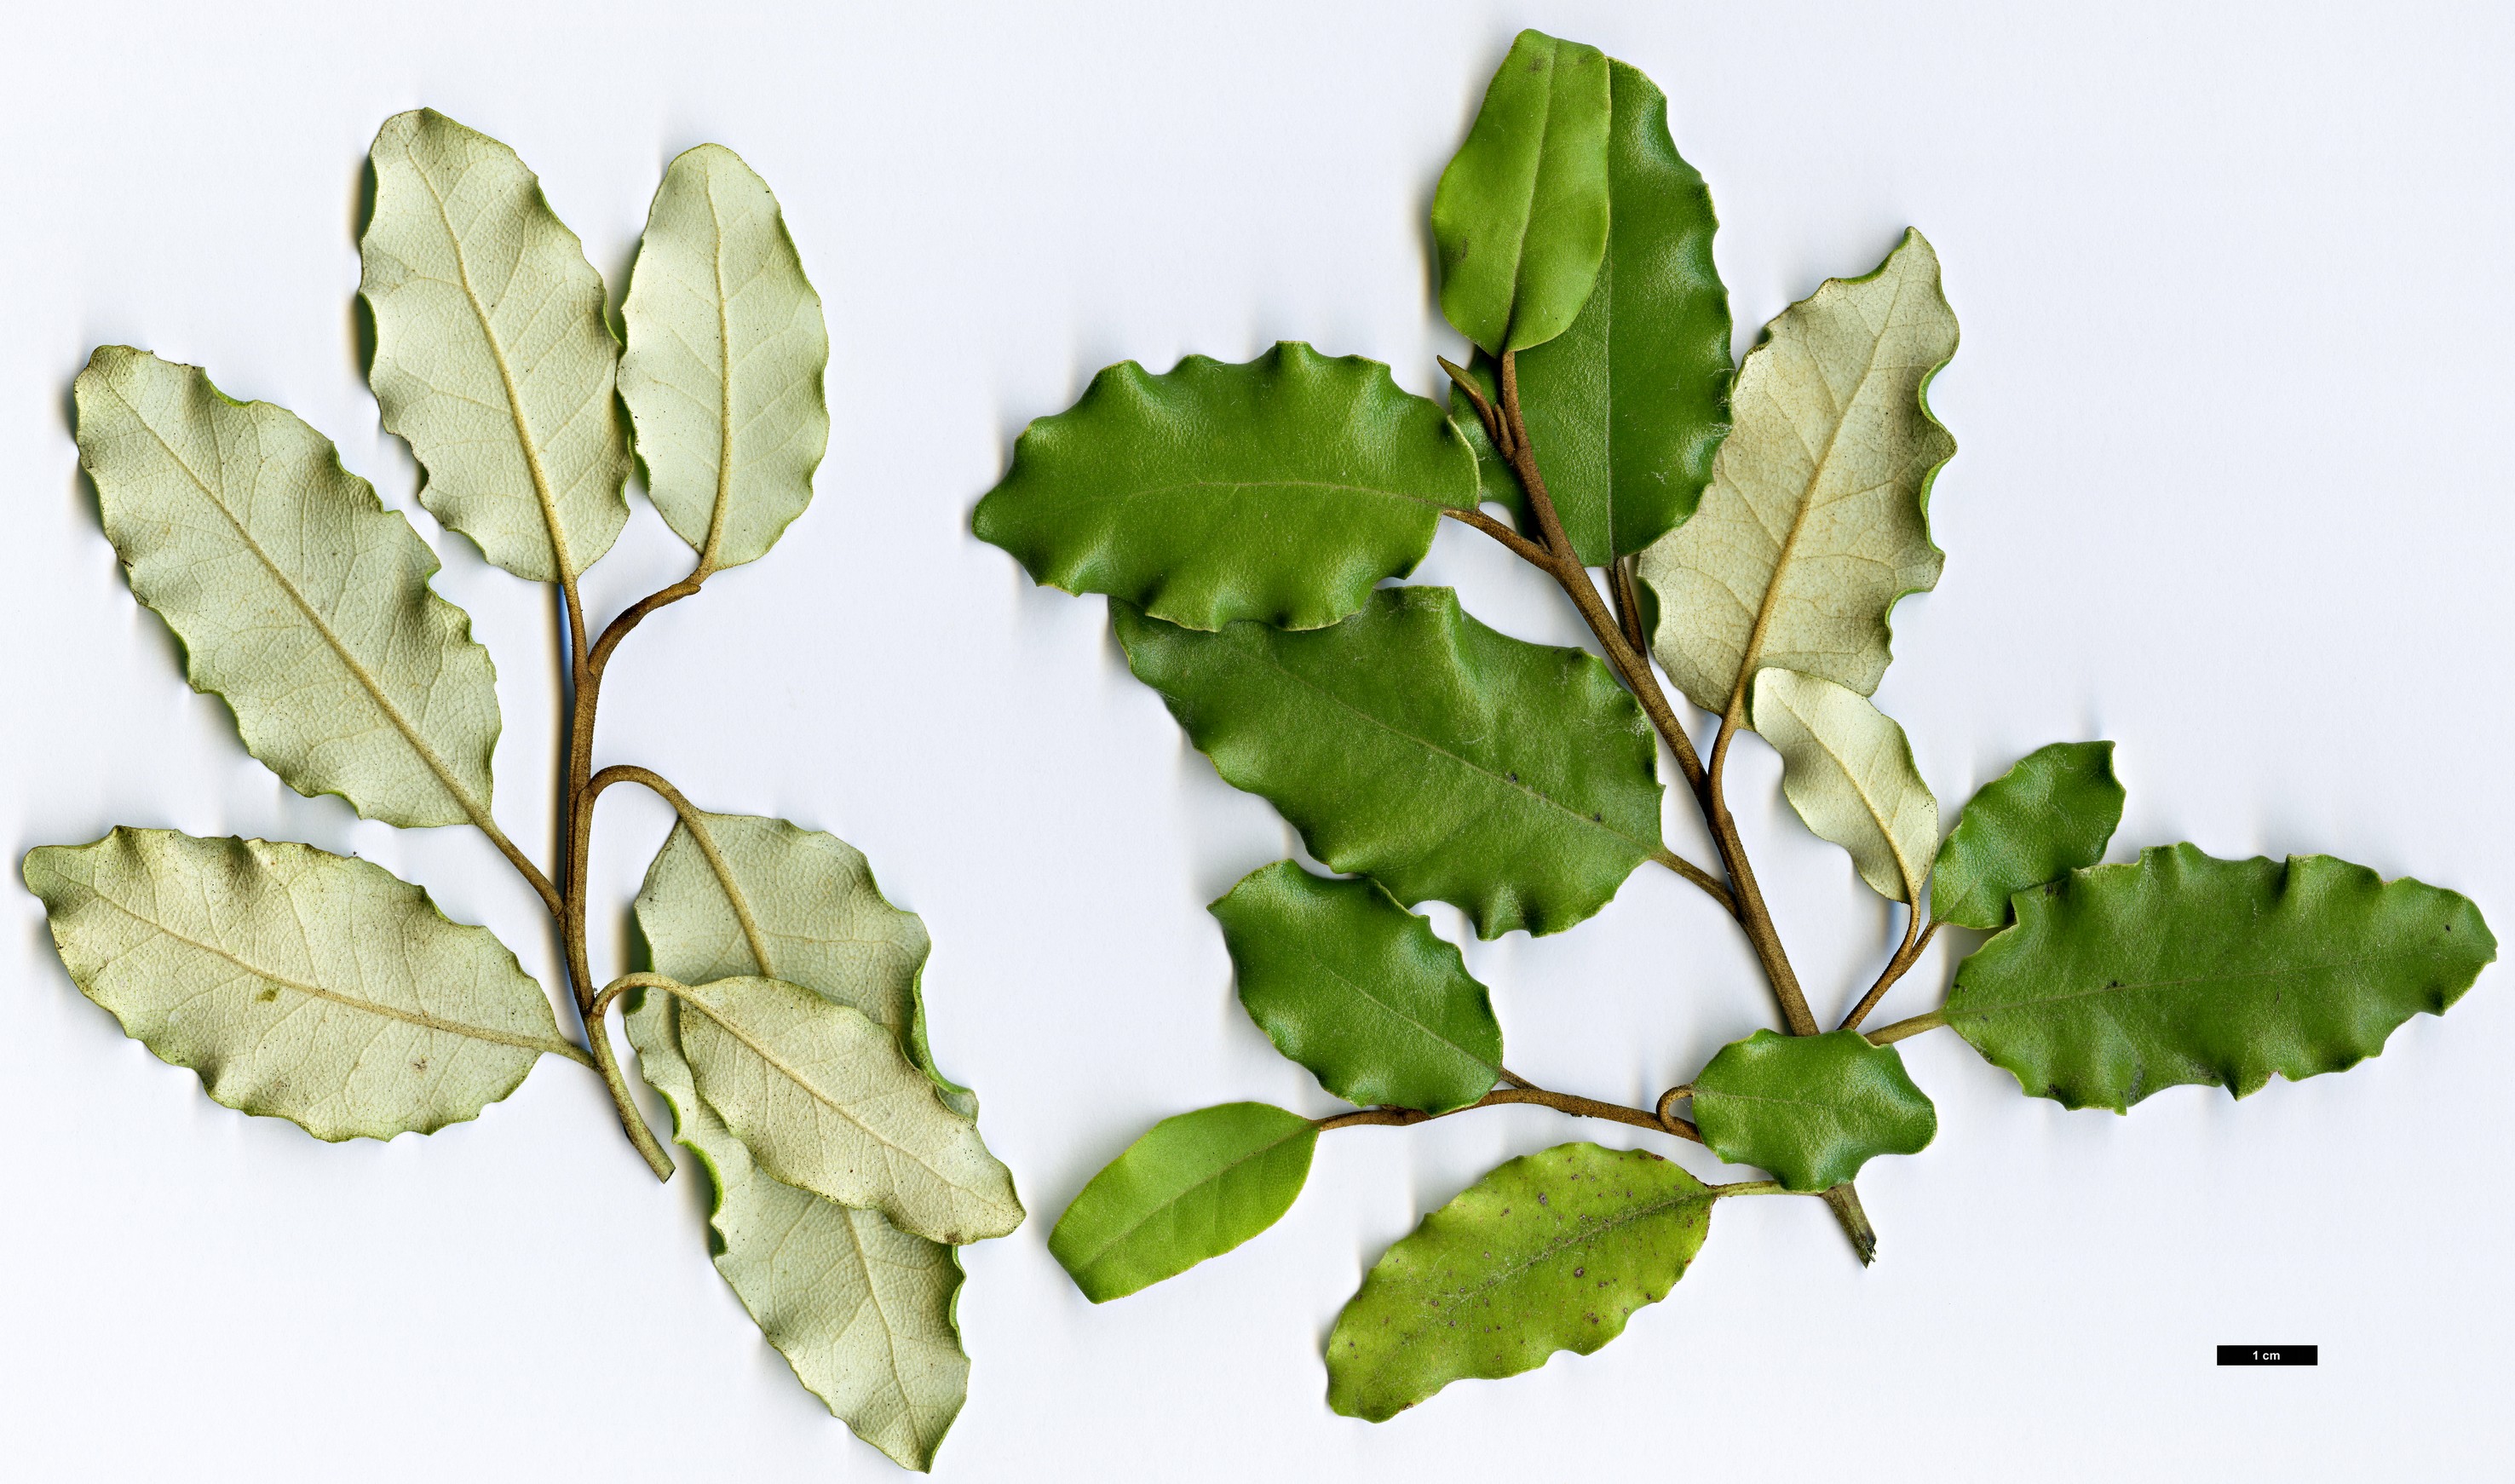 High resolution image: Family: Asteraceae - Genus: Olearia - Taxon: furfuracea